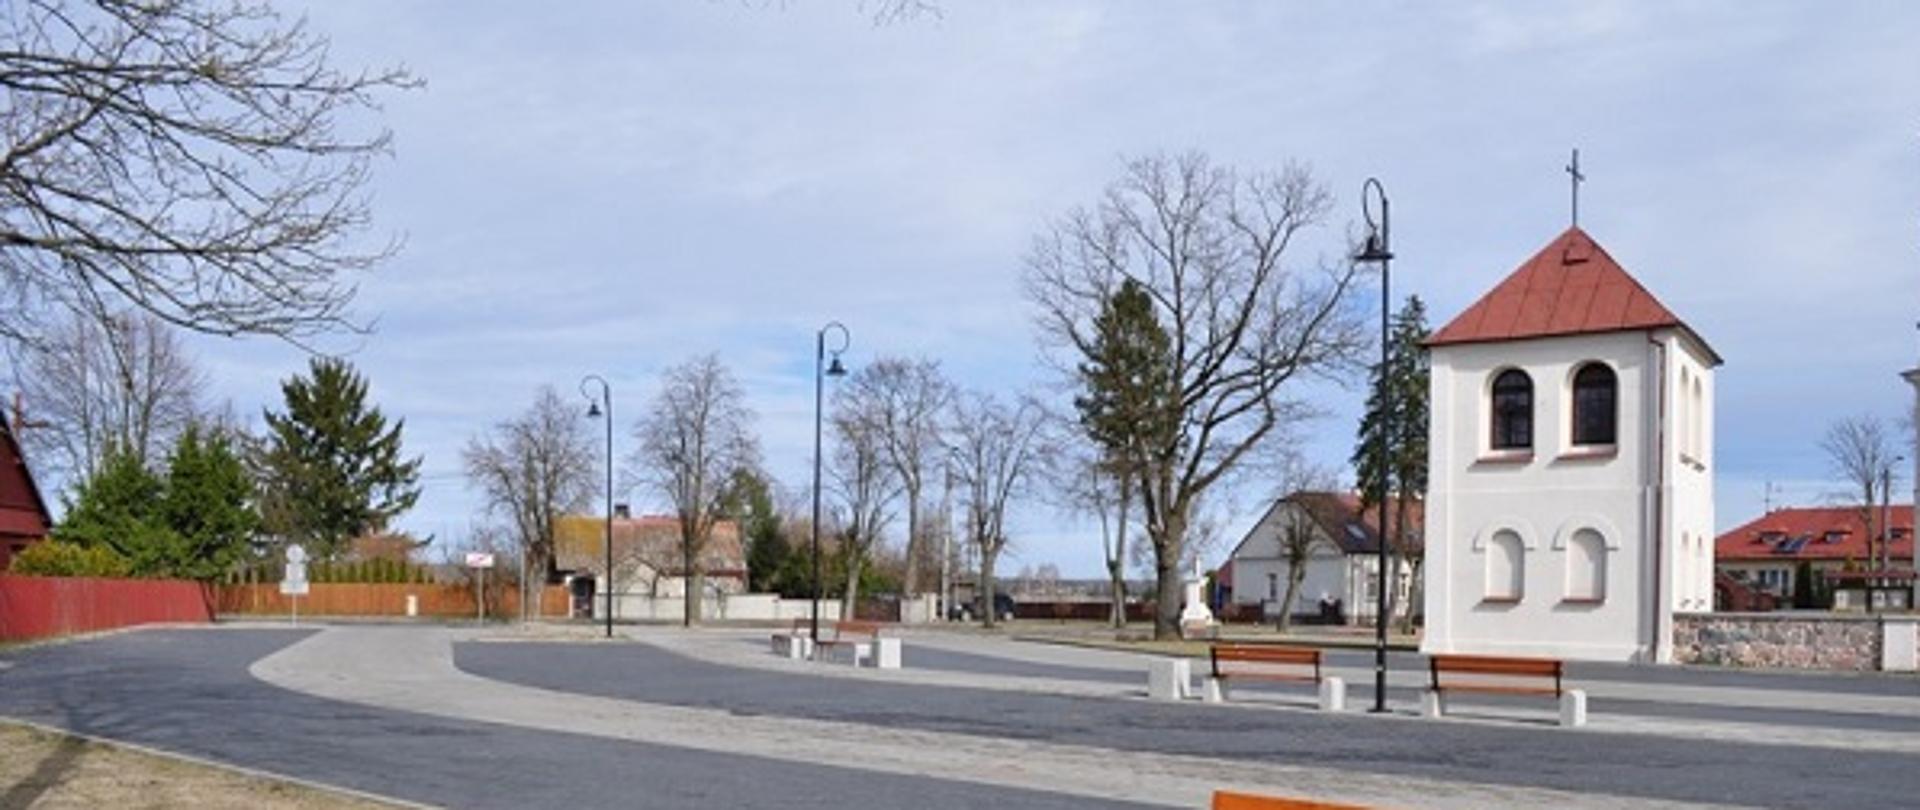 Na zdjęciu widoczny jest wybudowany plac do rekreacji w pobliżu kościoła w miejscowości Poręba. Teren został wyłożony kostką brukową. Zamontowane są ławki, kosze na śmieci oraz latarnie. W tle znajduje się dzwonnica przy kościele w Porębie oraz inne zabudowania.